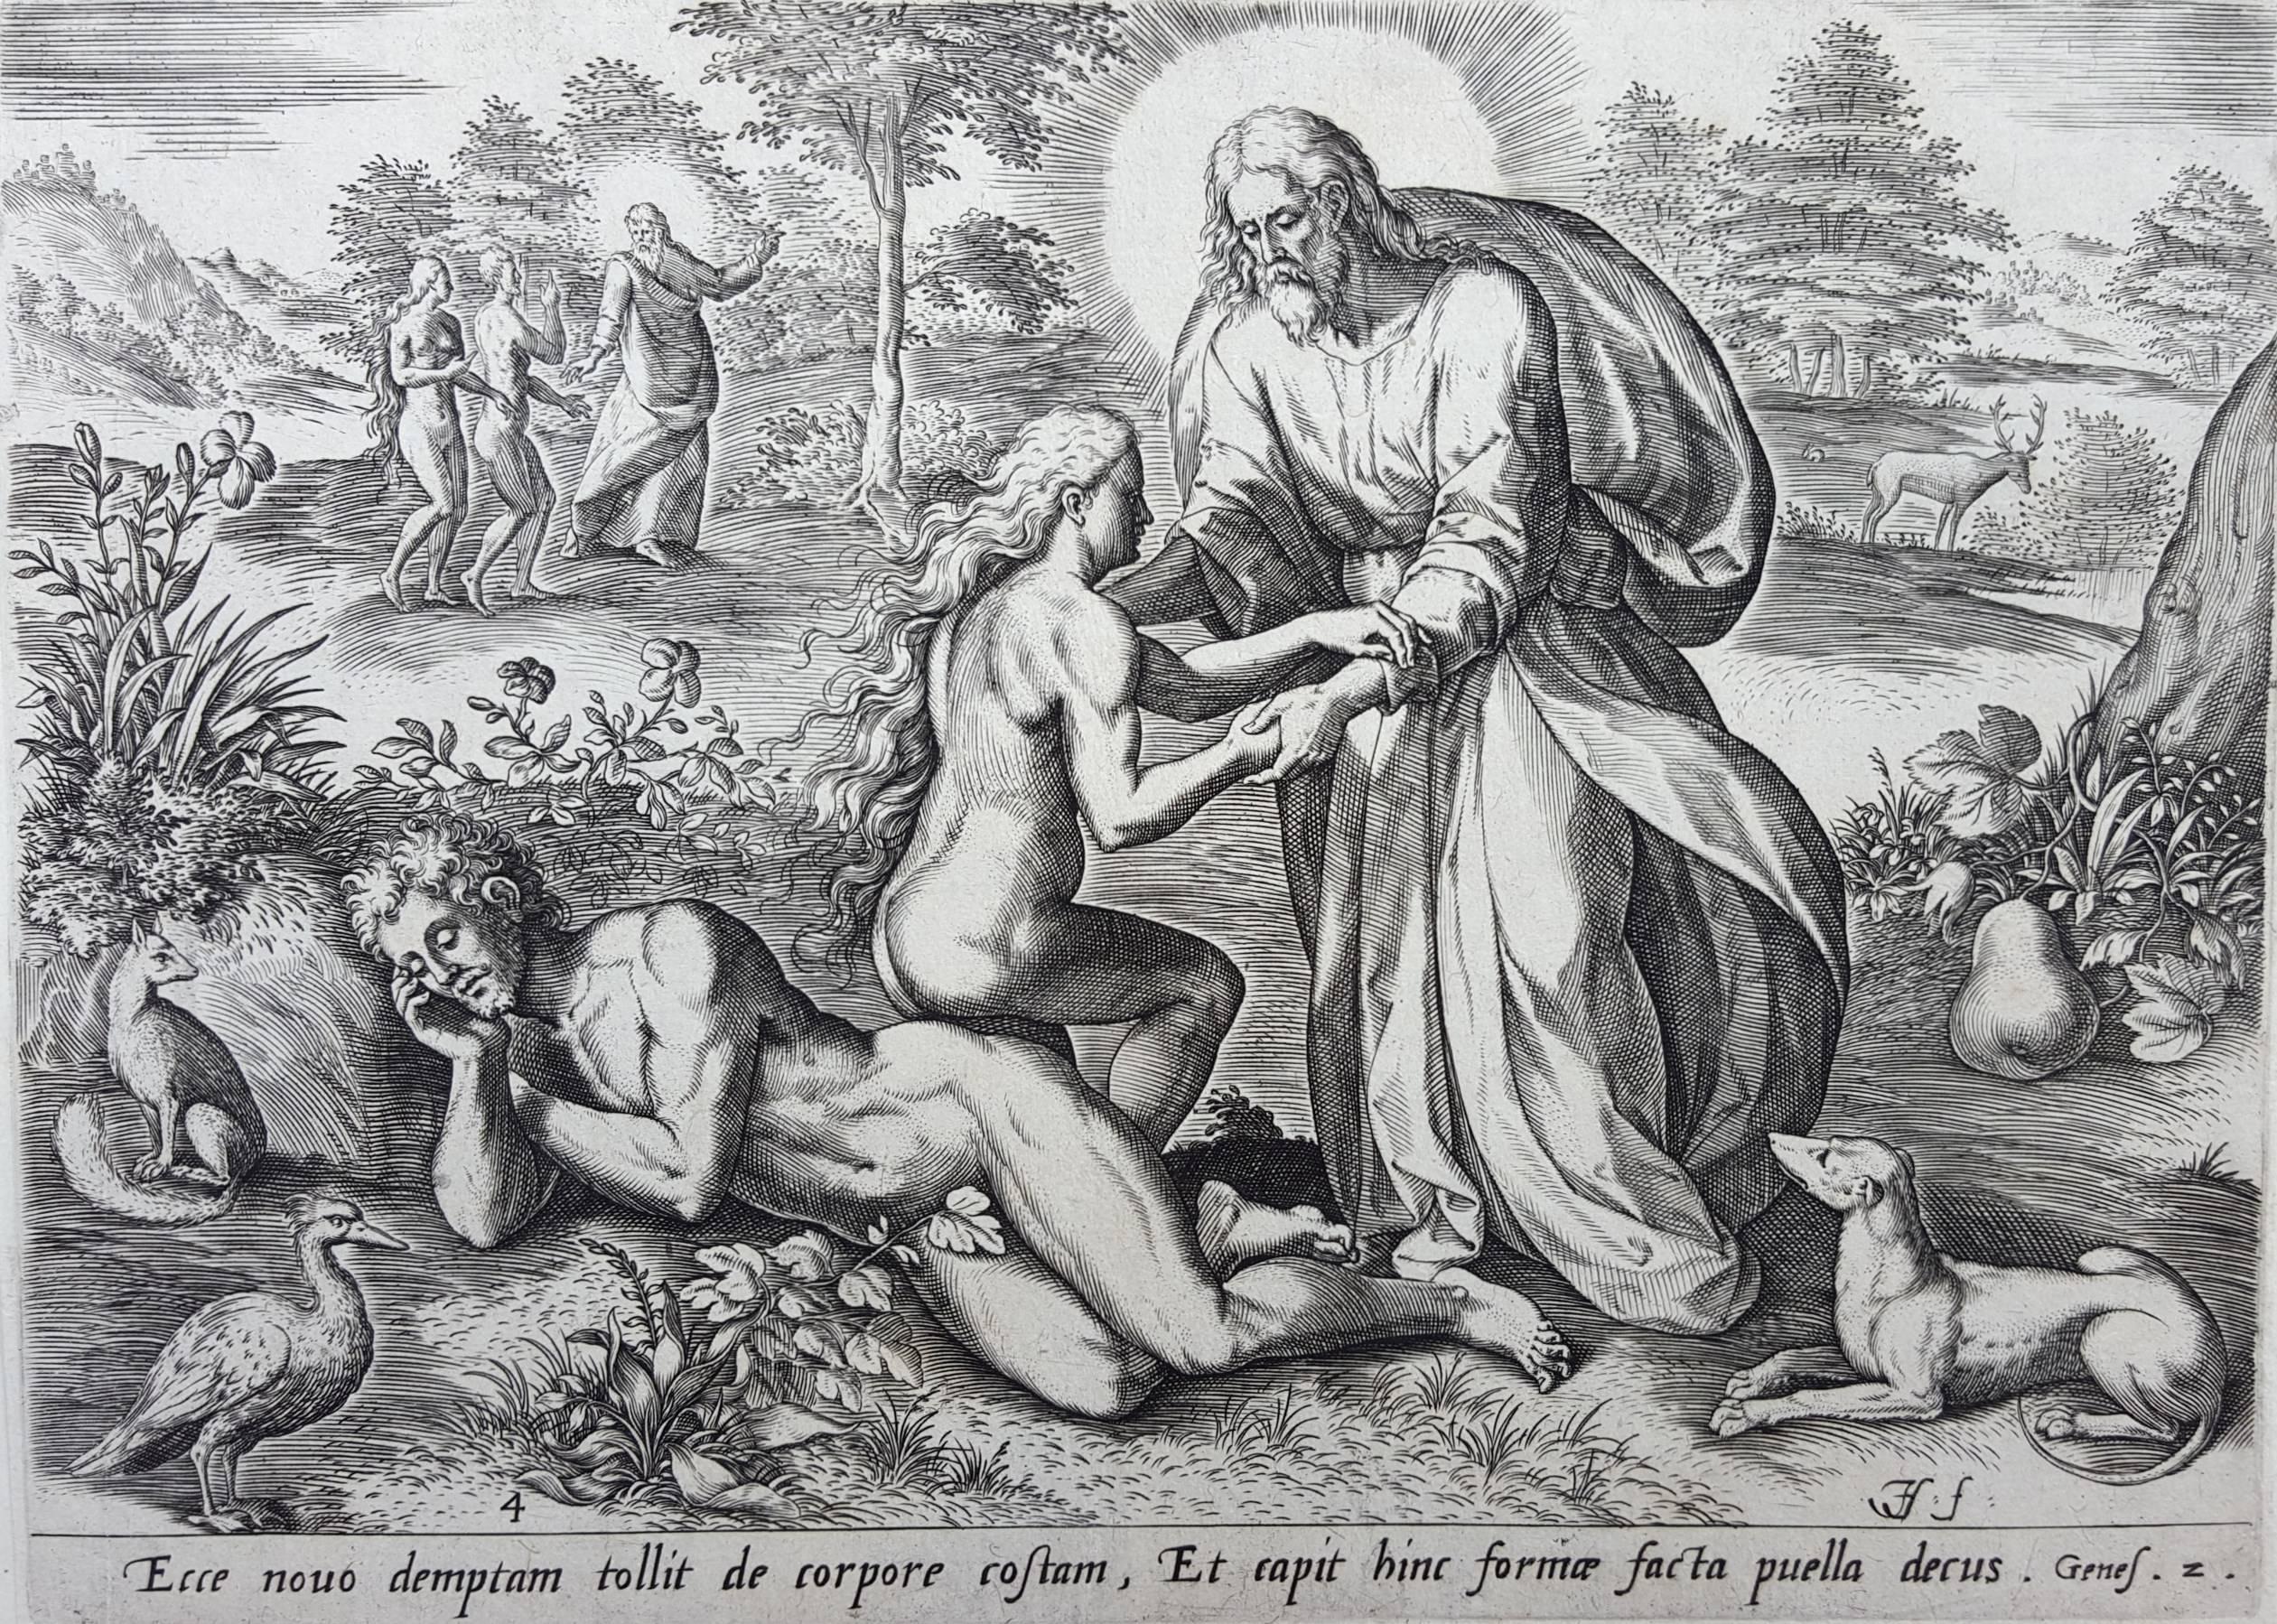 Johannes Sadeler I Figurative Print - Ecce nouo demptan tollit de corpore costam